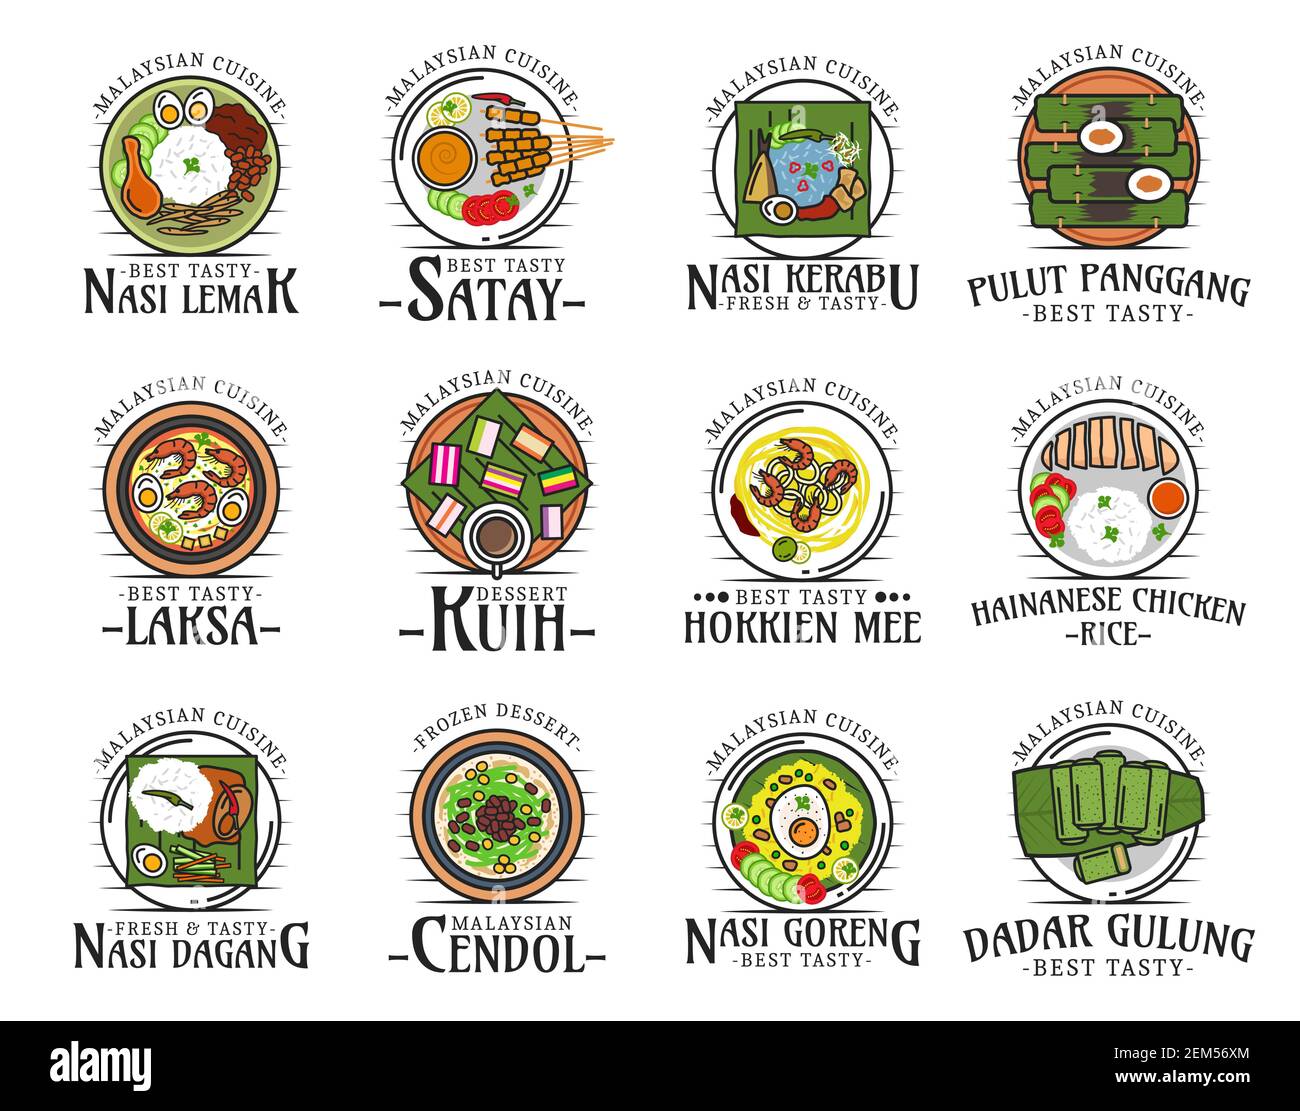 Malaysian cuisine isolated national food logos. Vector nasi lemak and satay, kerabu and pulut panggang, laksa and kuih, hokkien mee, hainanese chicken Stock Vector